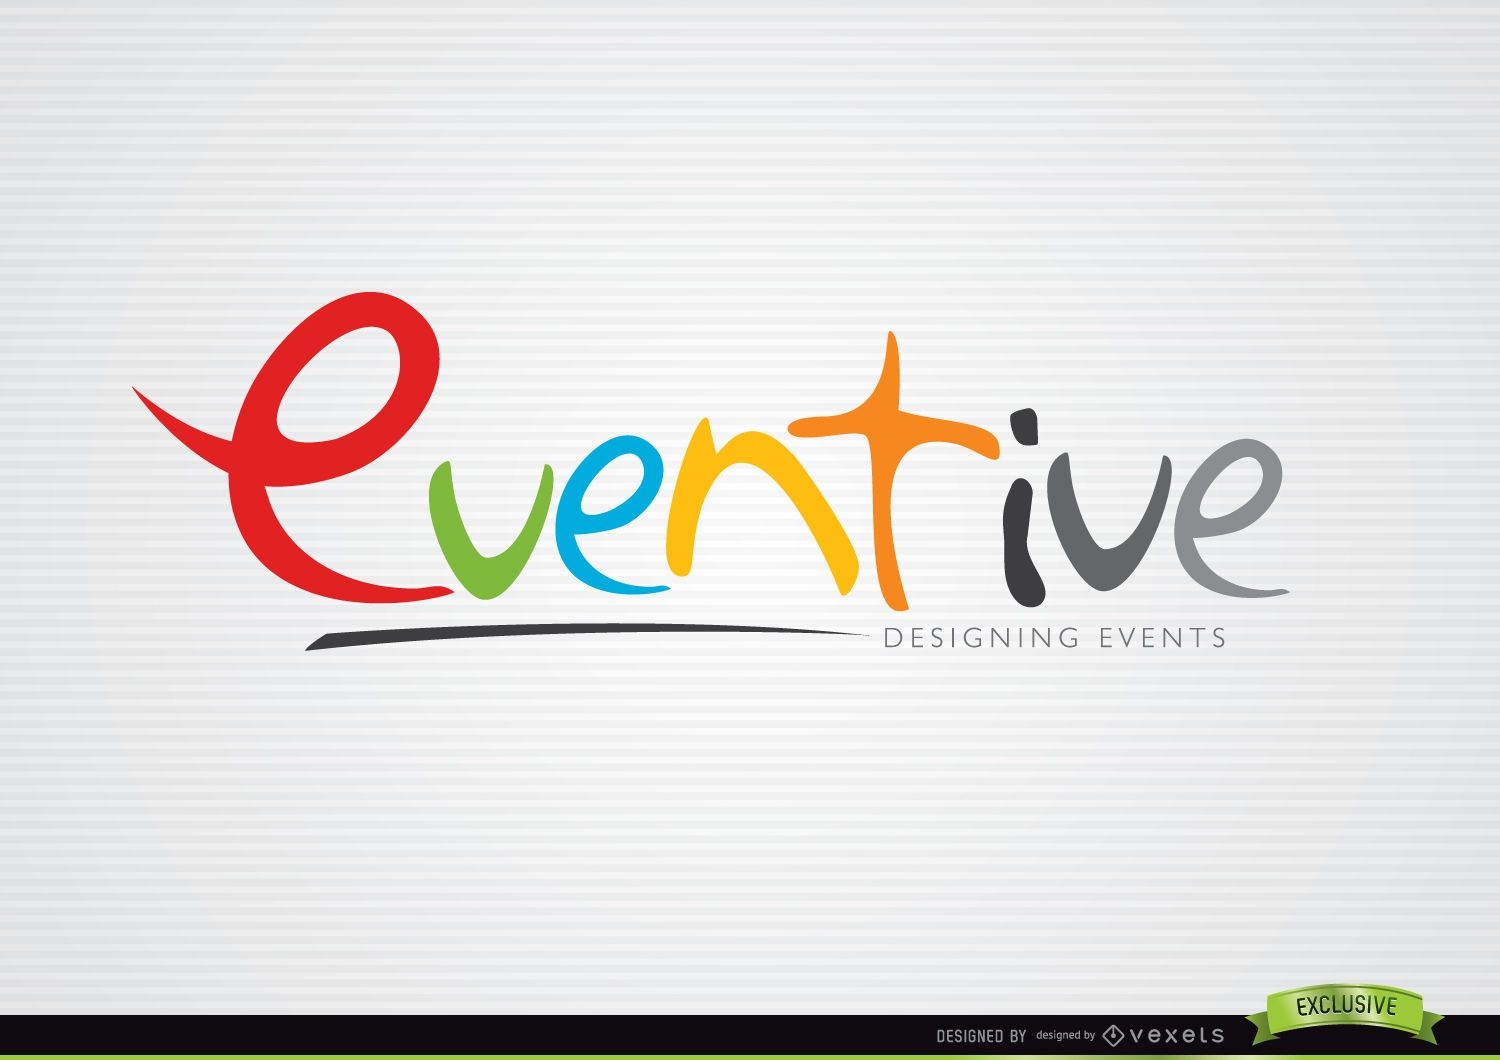 Eventive Colorful Design Logo Template